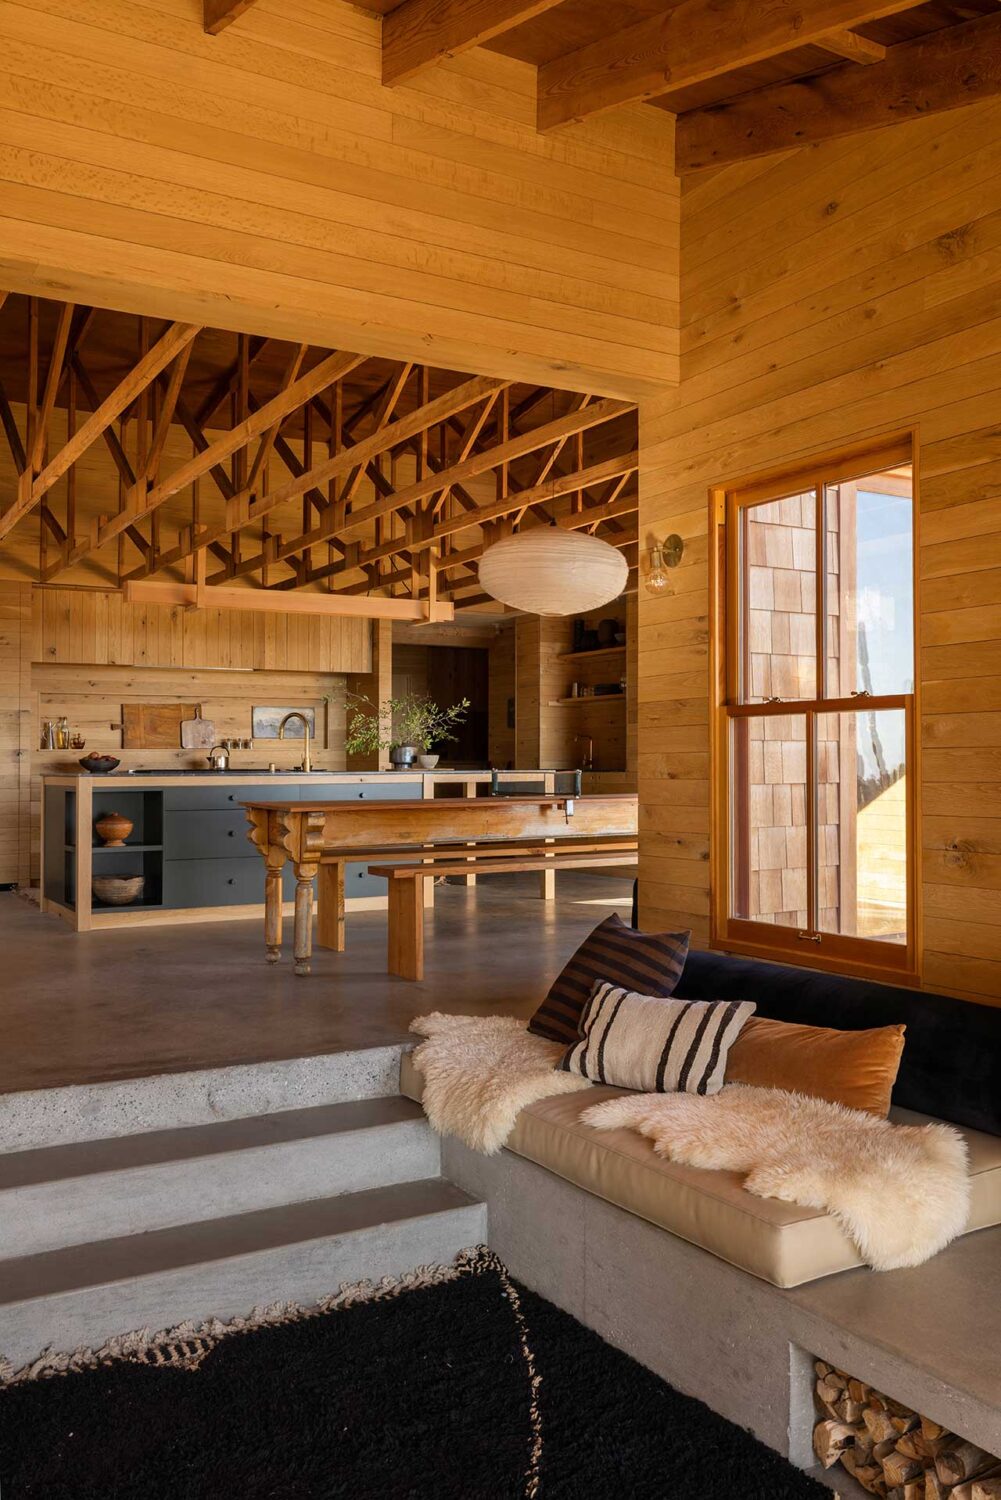 sunken-living-room-kitchen-wooden-mountaintop-home-nordroom